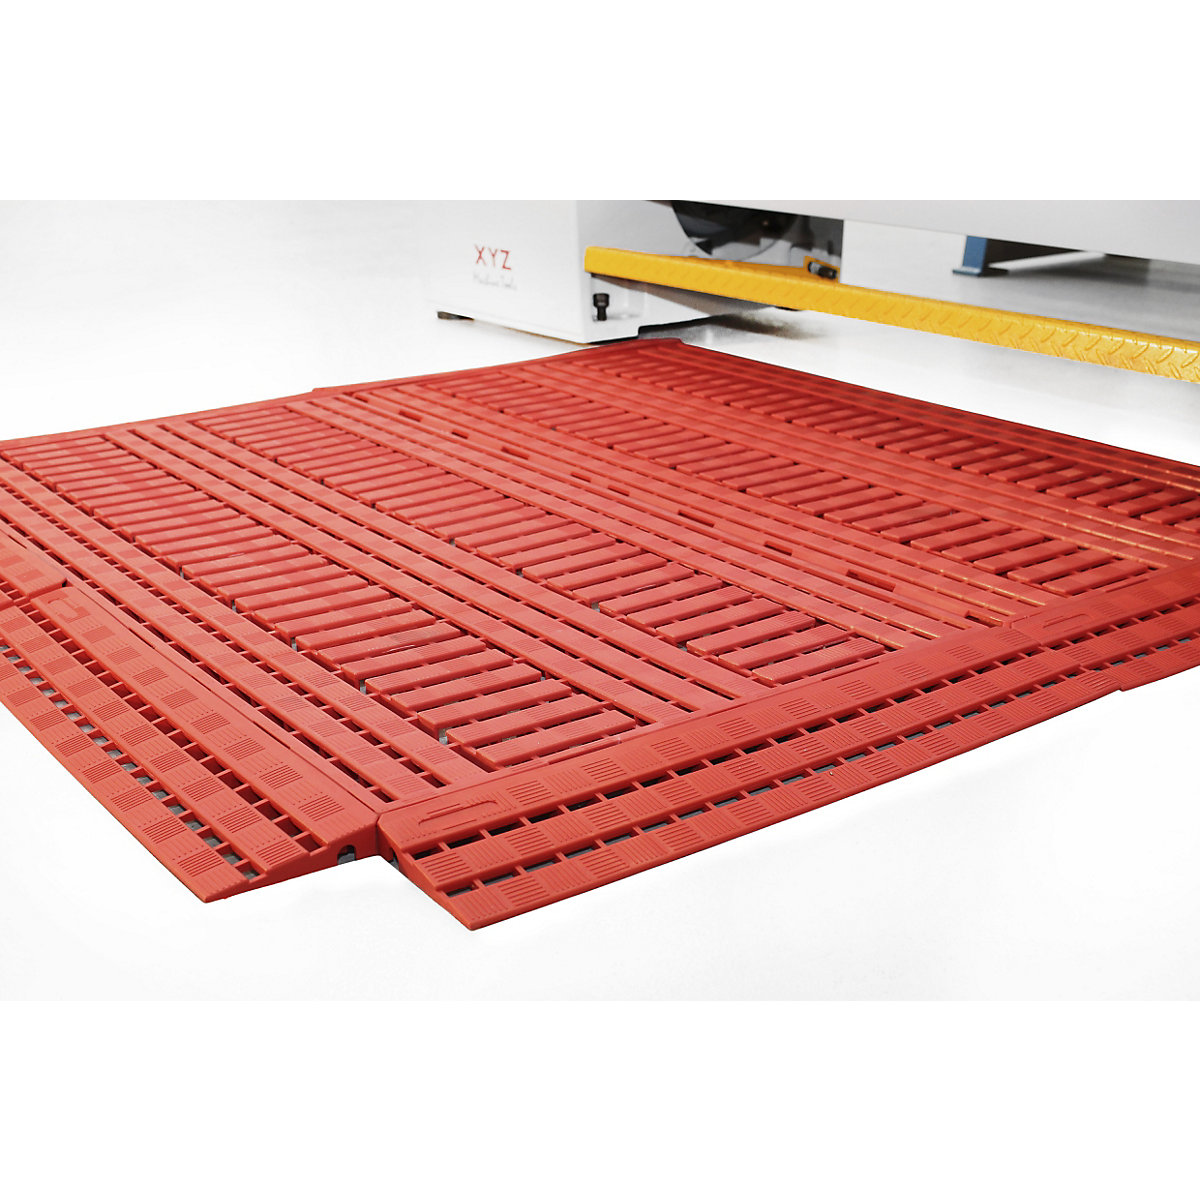 Ruszt podłogowy z tworzywa, polietylen – COBA, dł. x szer. 1200 x 600 mm, opak. 5 szt., czerwony